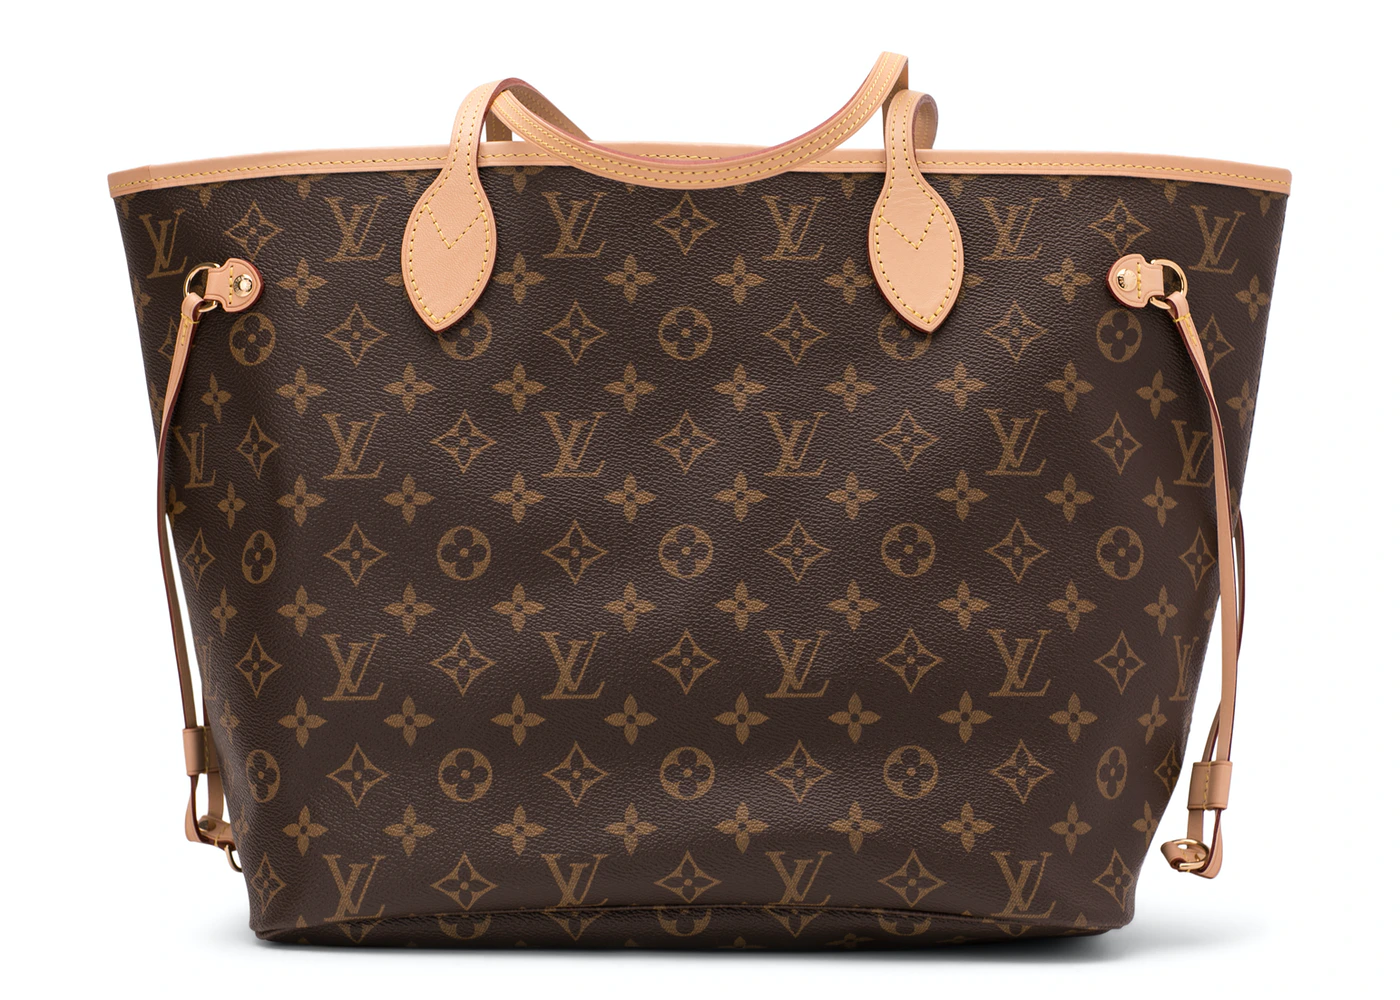 Loius Vuitton Designer Handbags